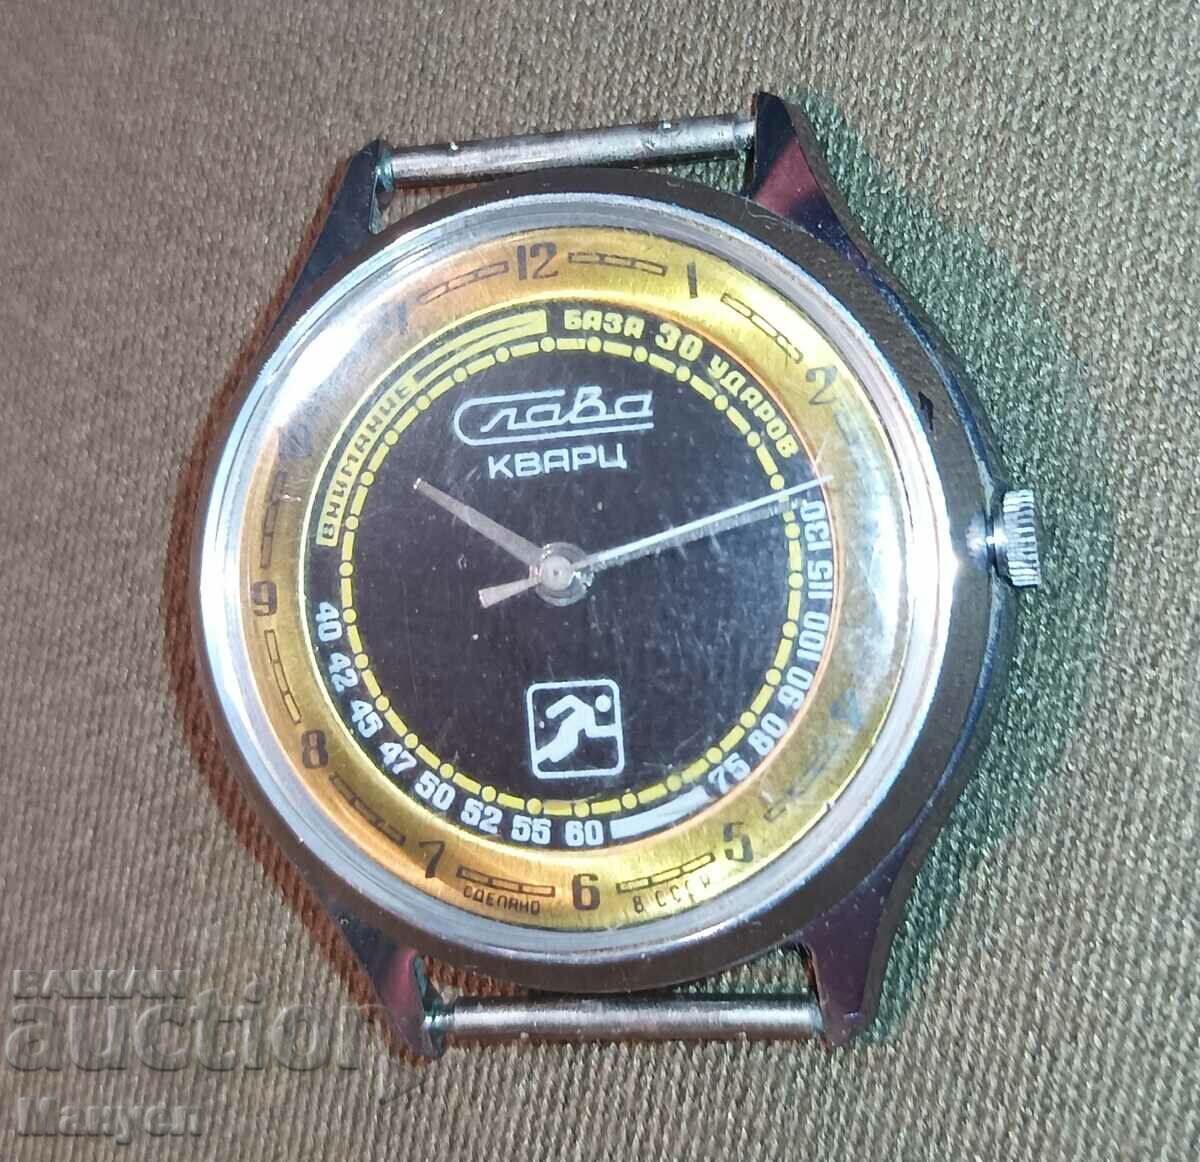 Πουλάω ένα εξαιρετικό σπάνιο ρολόι SPORT QUARTZ "SLAVA".